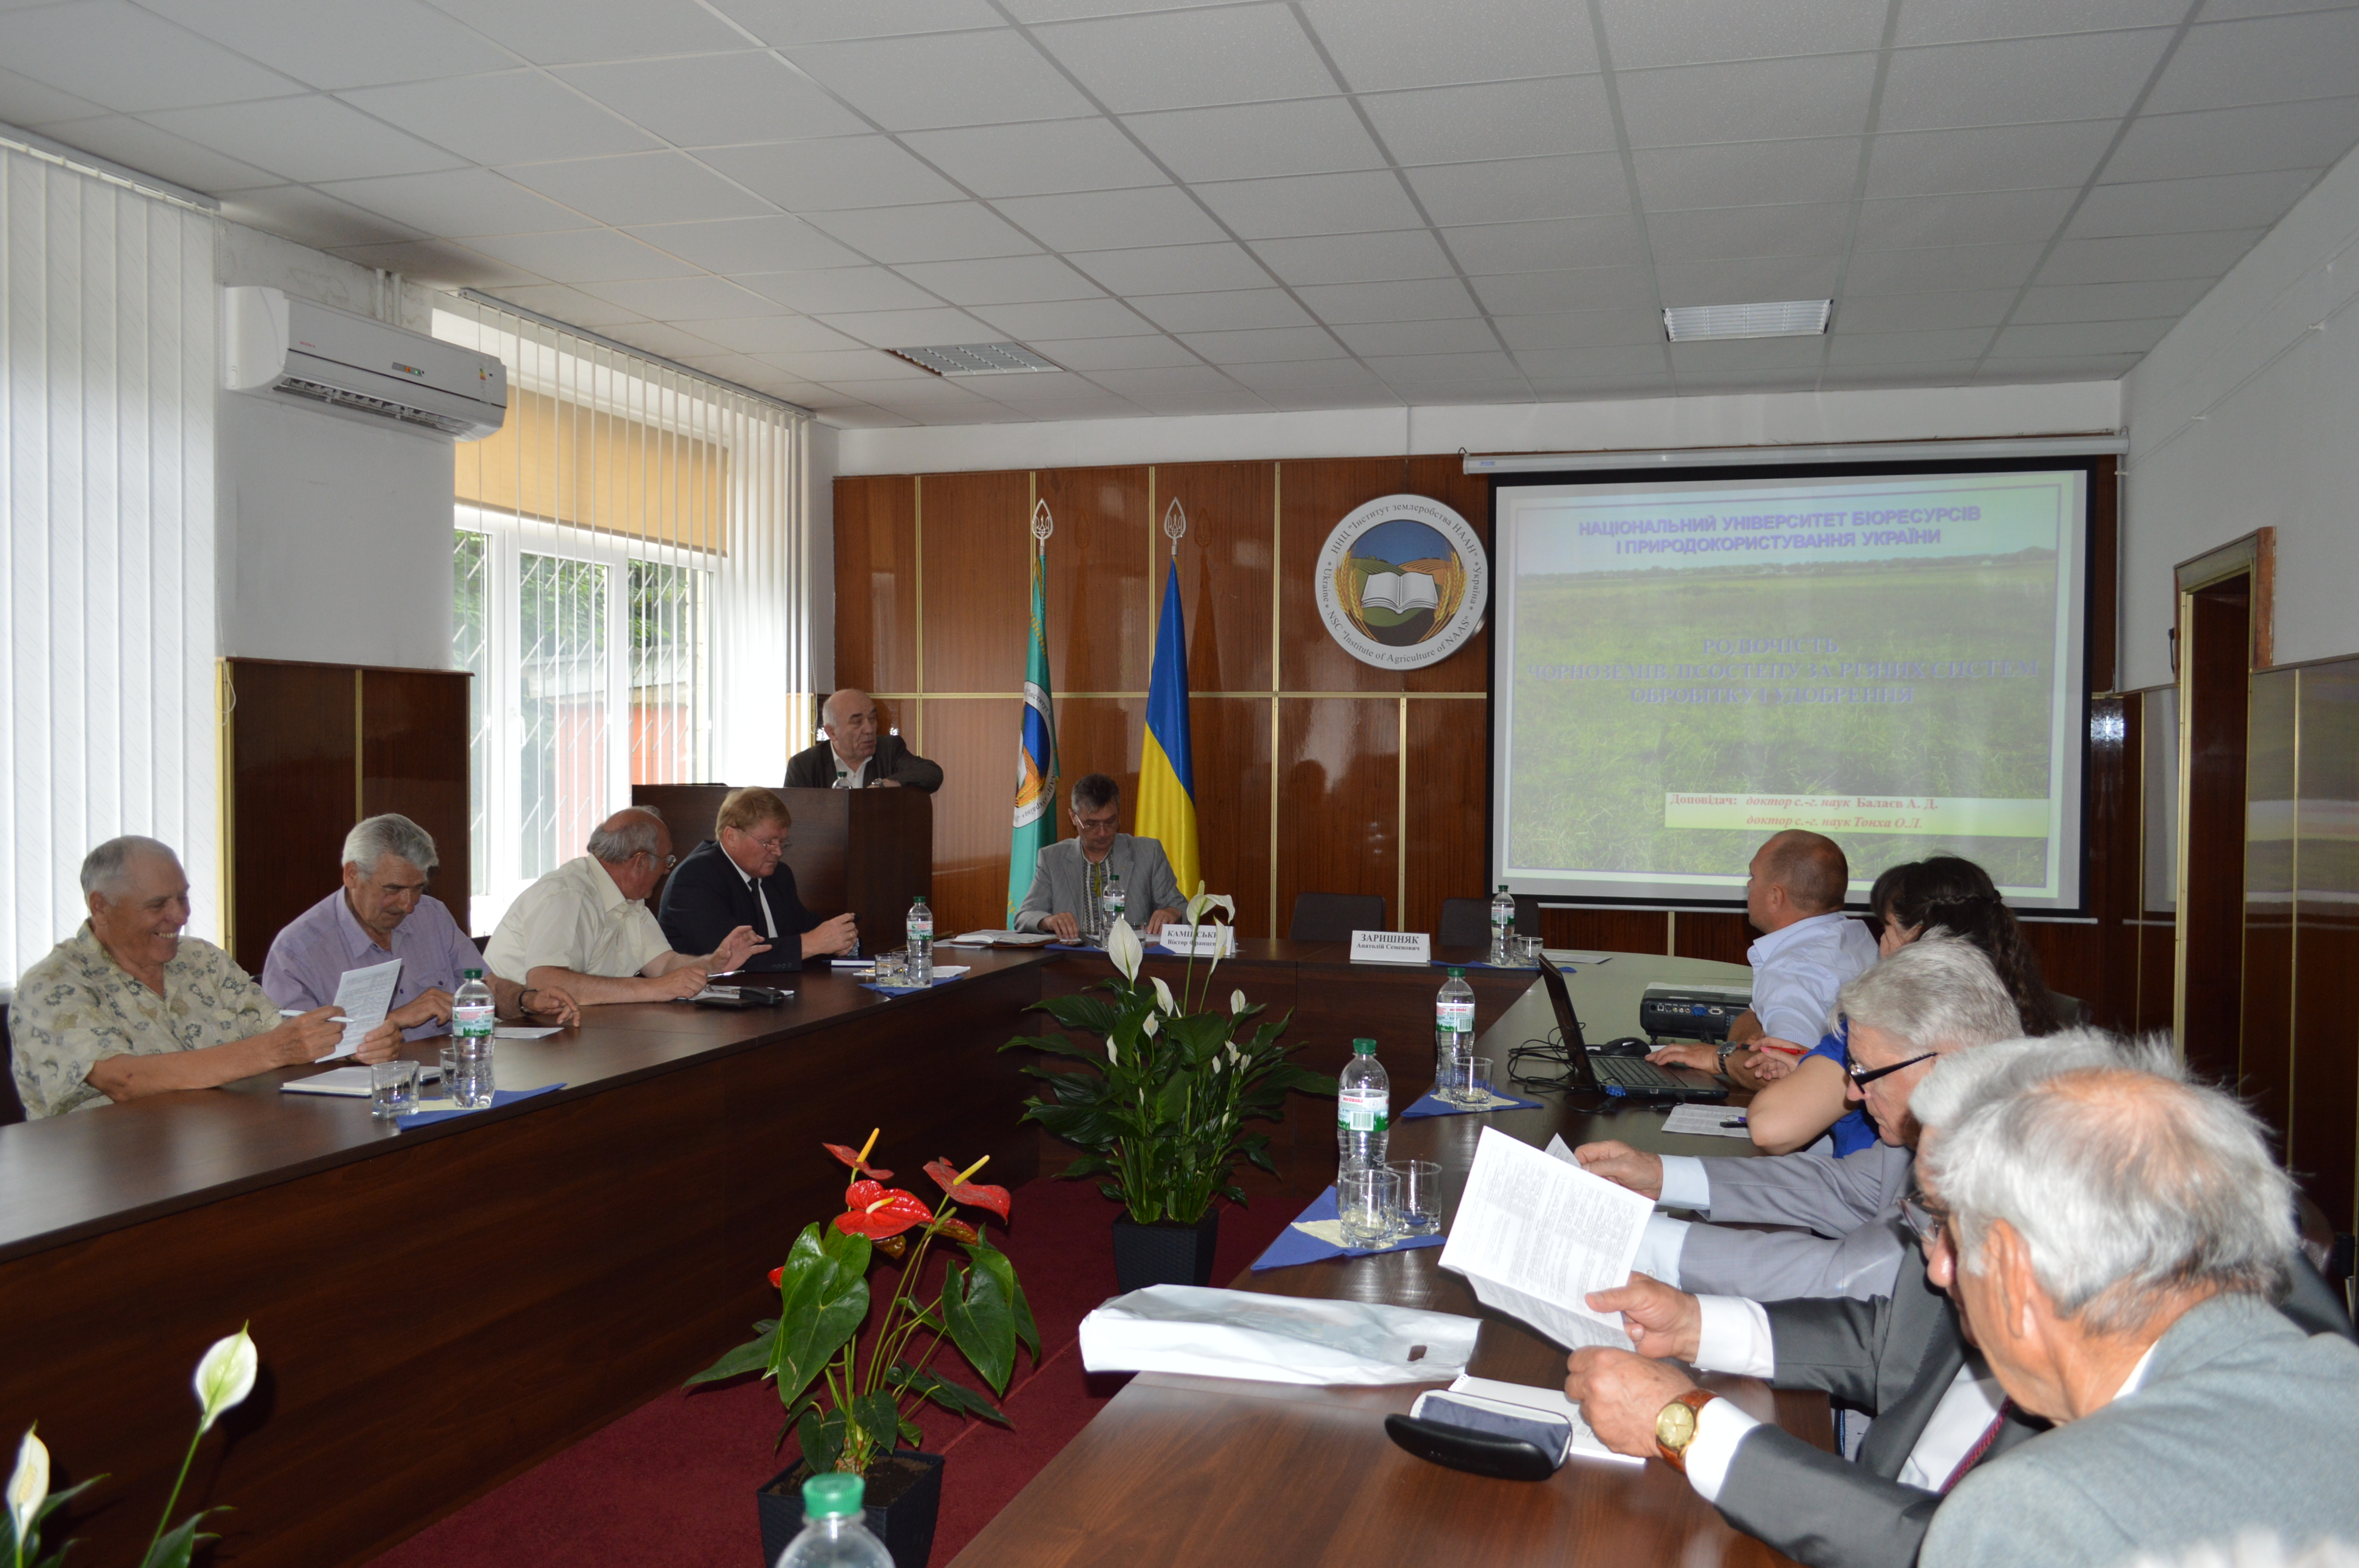 Всеукраїнська наукова конференція на тему: «Оптимізація земельних угідь як основна складова їх ефективного використання». 